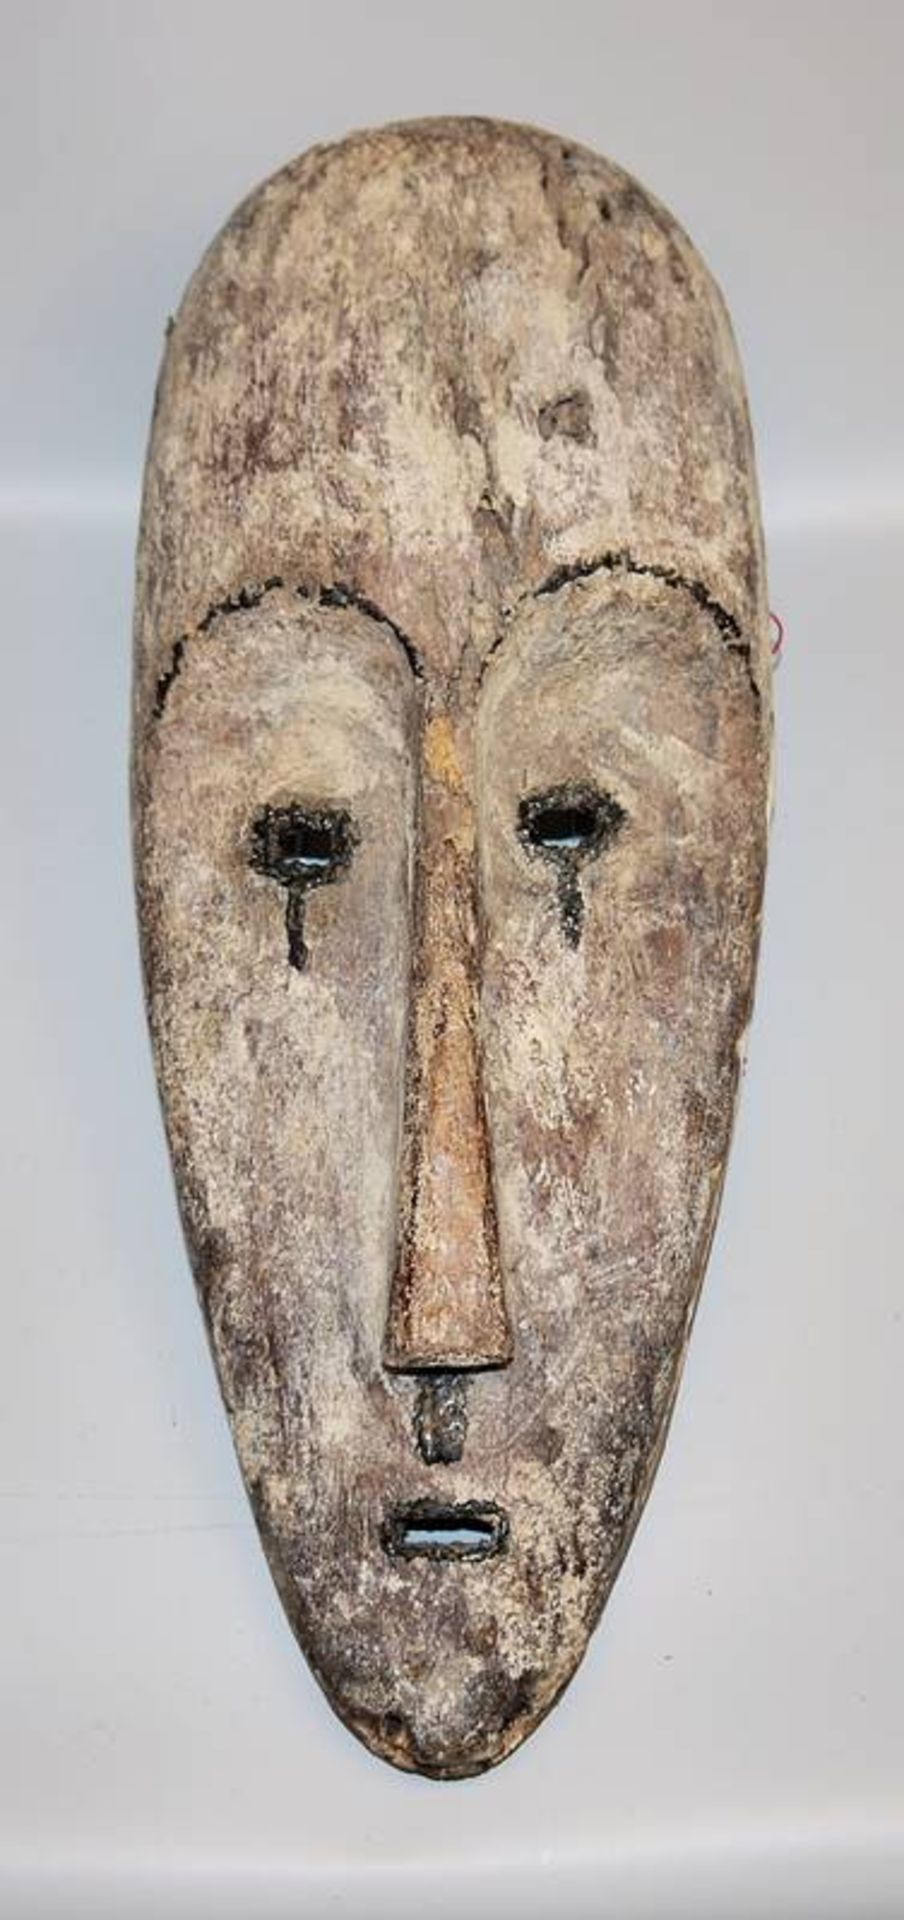 Dance mask "Ngontang" of the Fang, Gabon